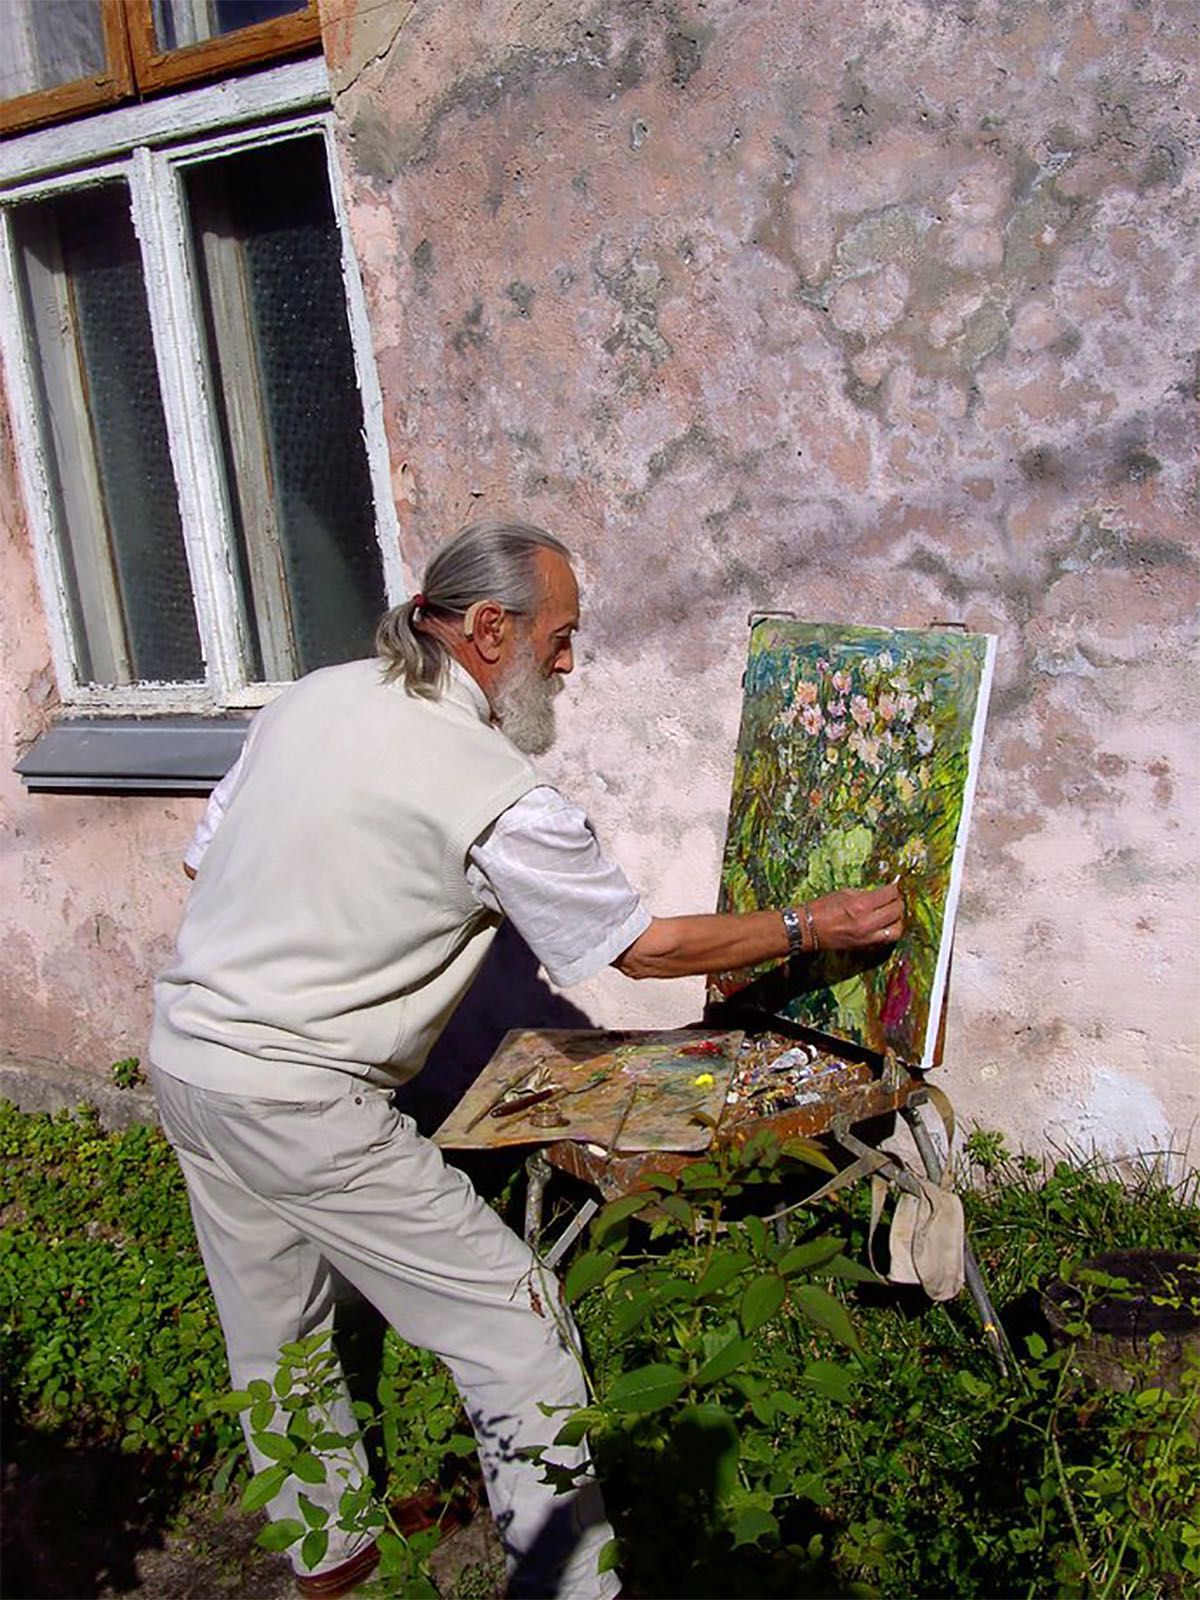 Картина "Лесная тропинка" Макаров В.В., 1995, народный мастер живописи